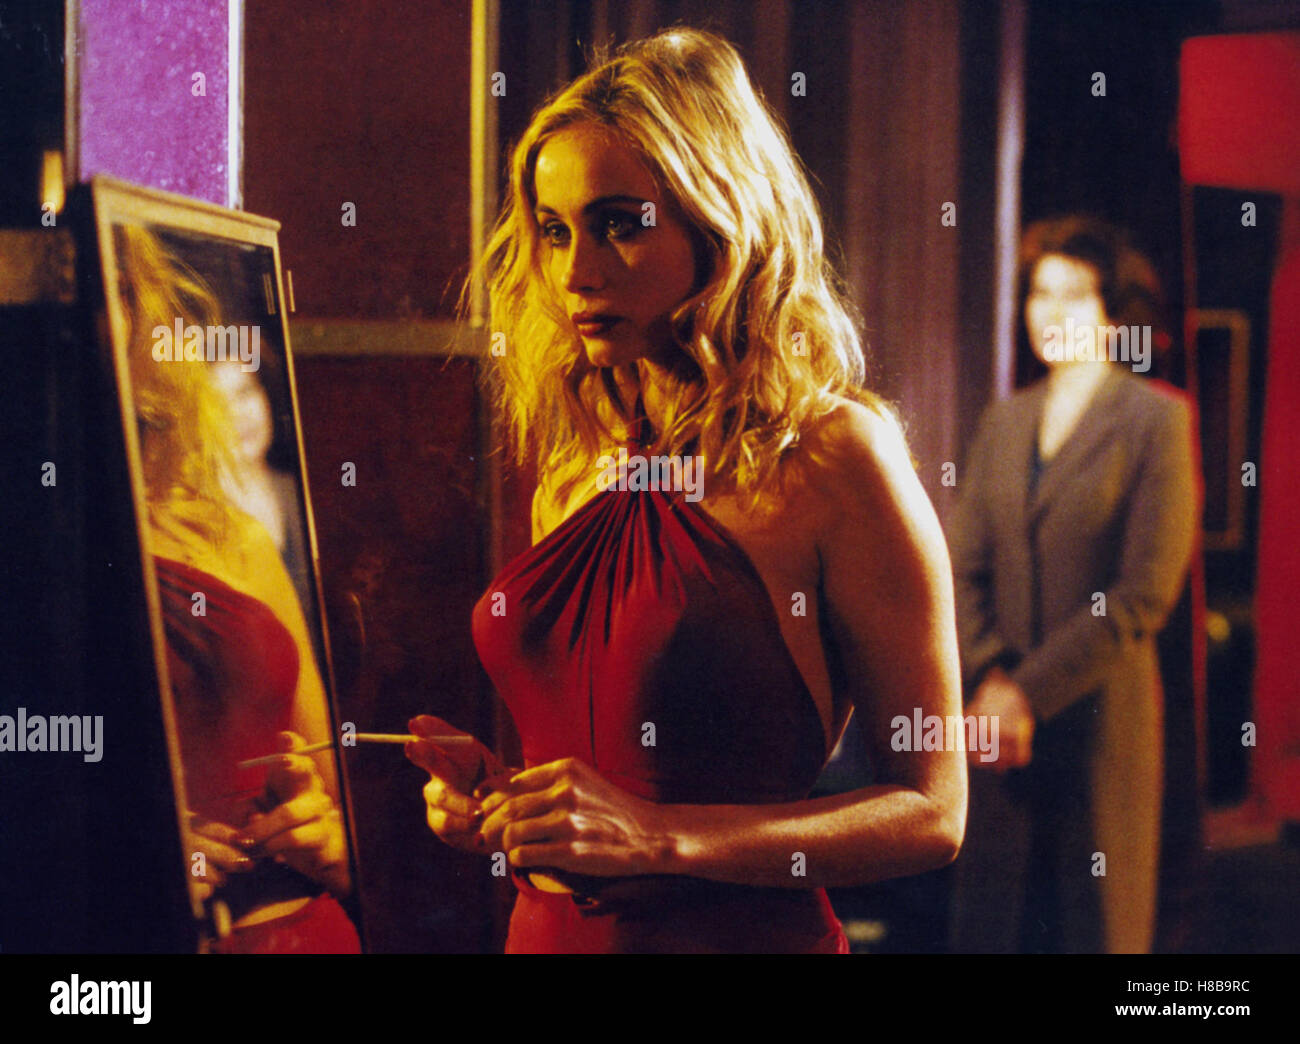 Nathalie, (NATHALIE) F-E 2003, Regie: Anne Fontaine, EMMANUELLE BEART, FANNY ARDANT, Key: Blondine, Spiegel, Spiegelbild, Stock Photo